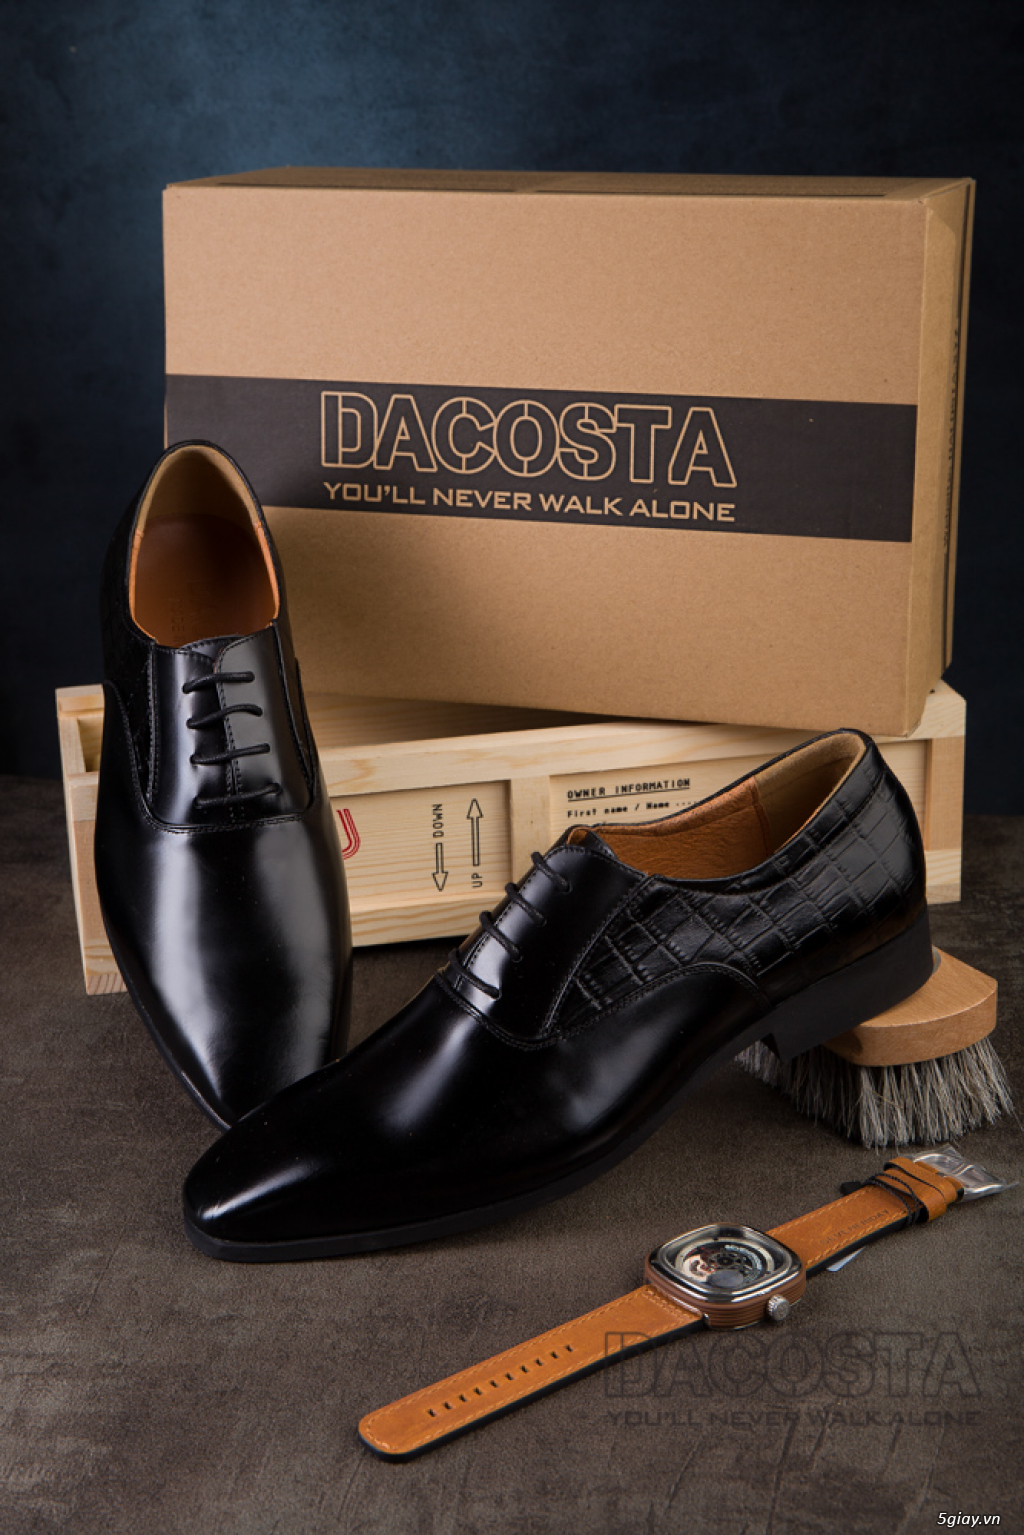 Tiệm Giày Dacosta - Những Mẫu Giày Tây Oxford Hot Nhất 2019 - 11